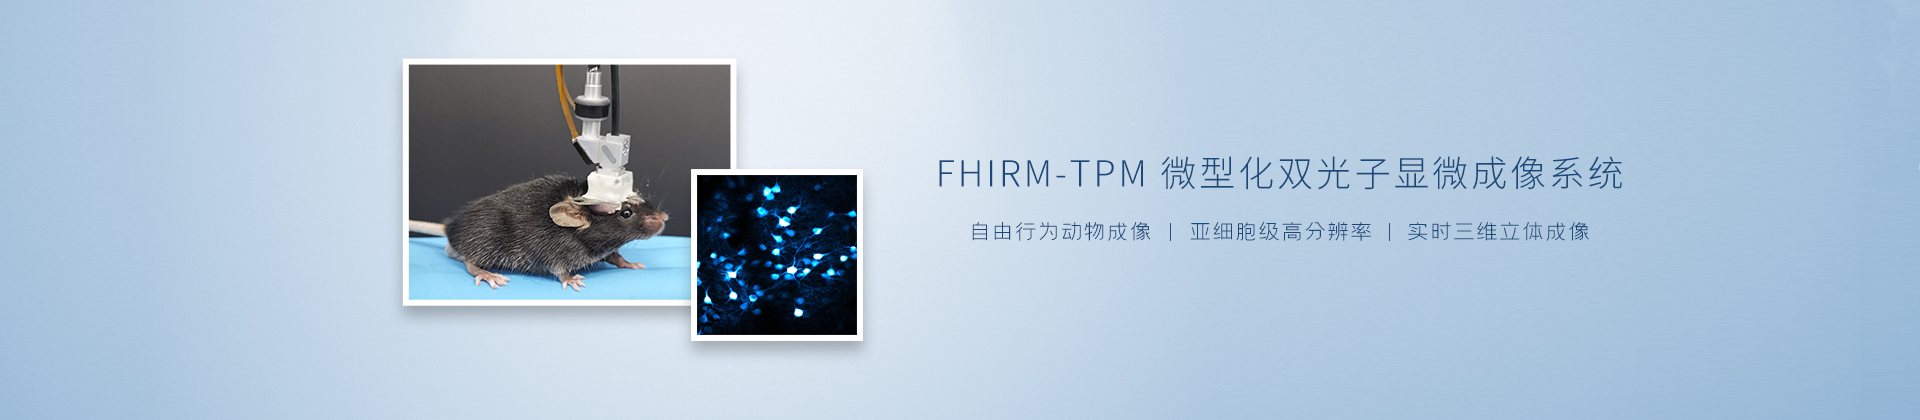 FHIRM-TPM微型化双光子显微成像系统